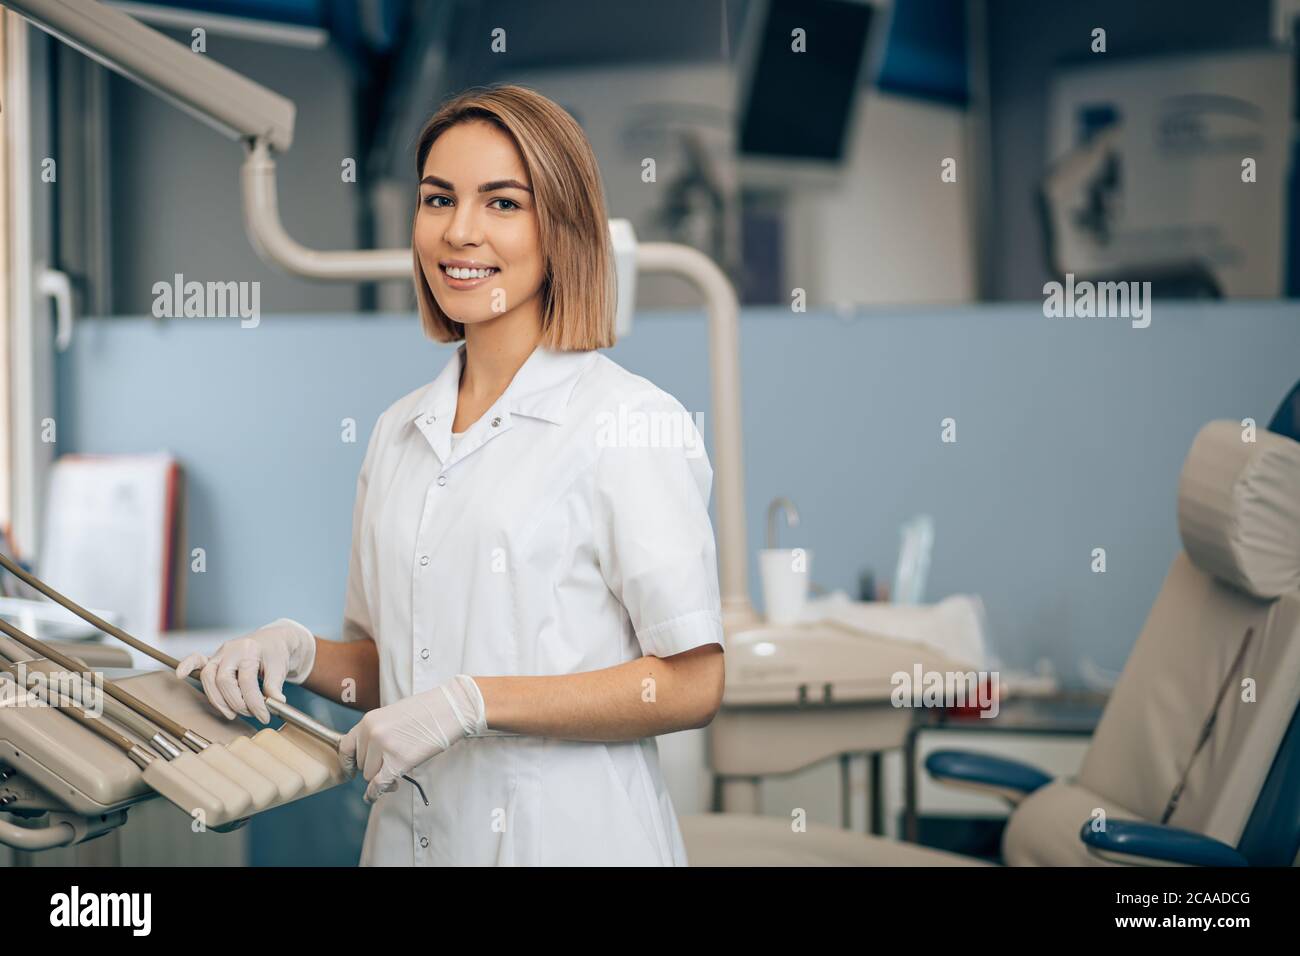 ritratto di dentista al lavoro, indossando l'uniforme bianca del medico, utilizzando strumenti e attrezzature mediche. Concetto di assistenza sanitaria Foto Stock